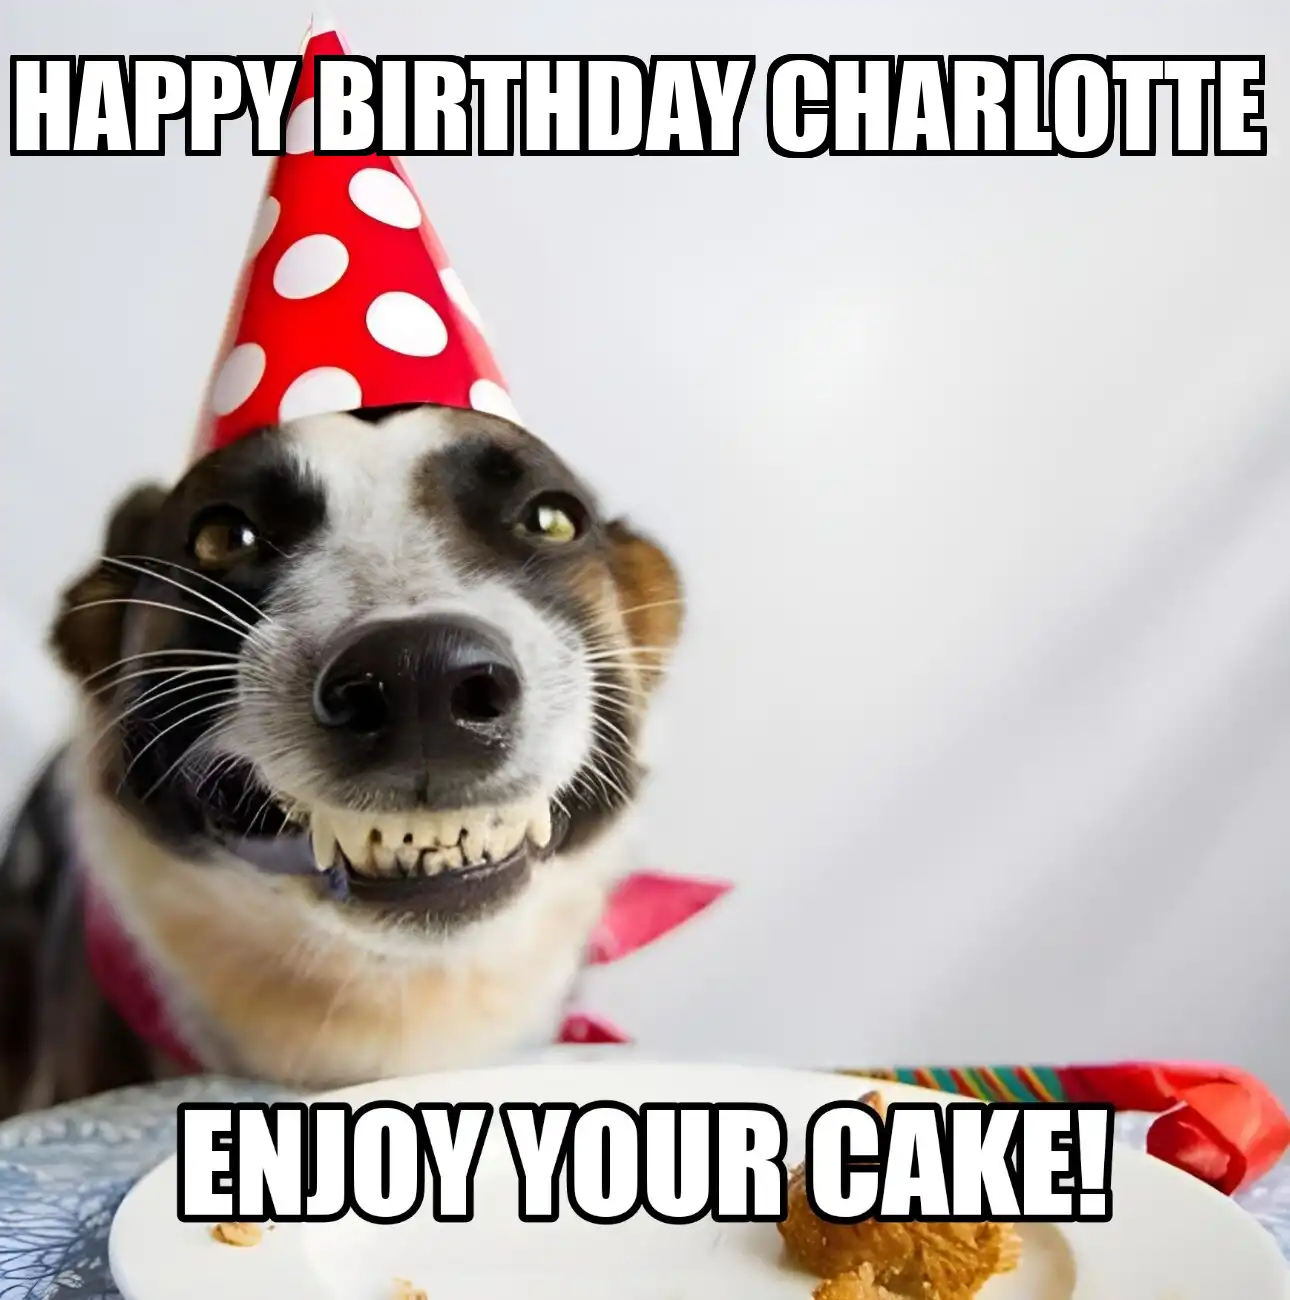 Happy Birthday Charlotte Enjoy Your Cake Dog Meme